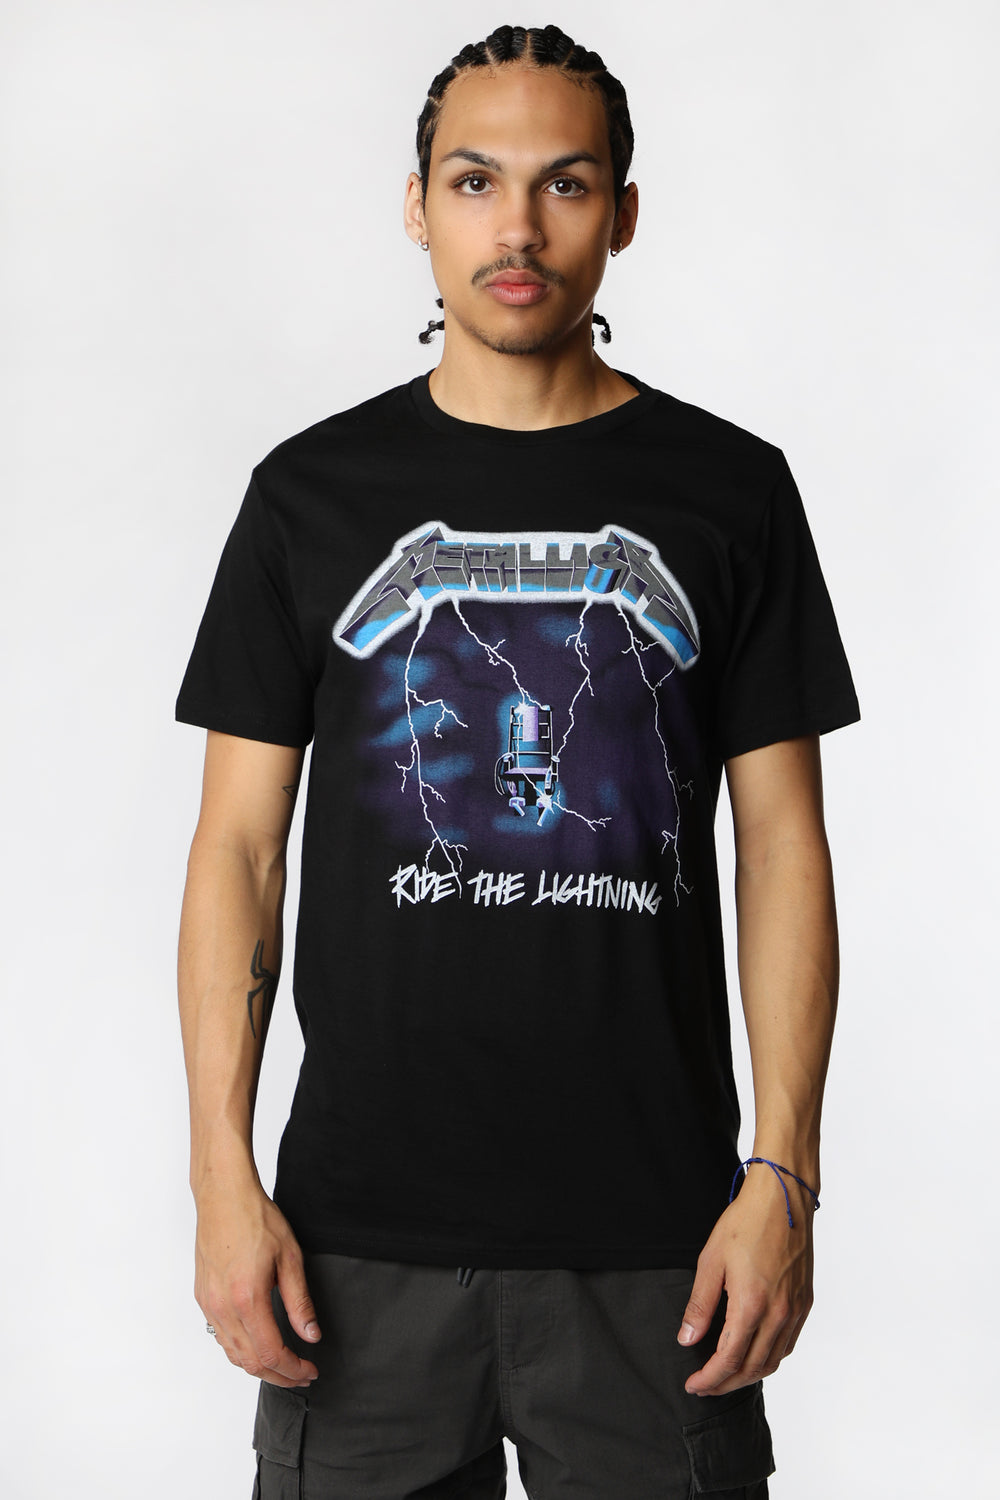 T-Shirt Imprimé Metallica Ride the Lightning Homme T-Shirt Imprimé Metallica Ride the Lightning Homme